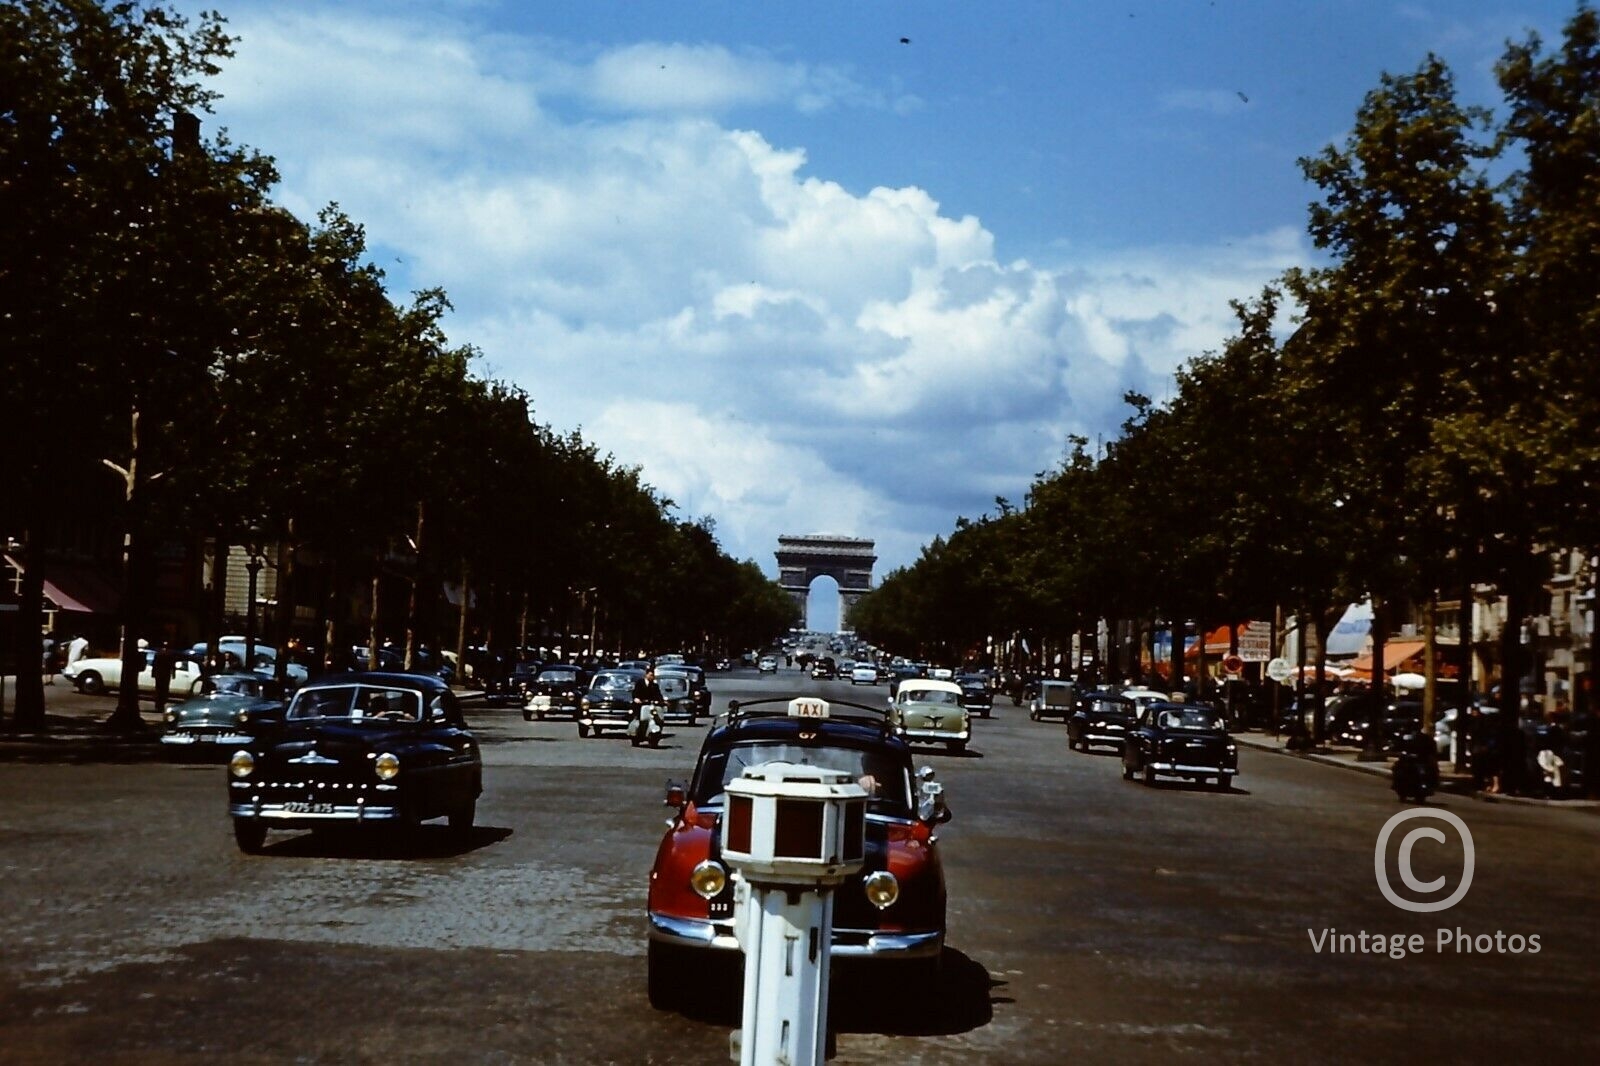 1950s Champs Elysees & Cars, Paris, France